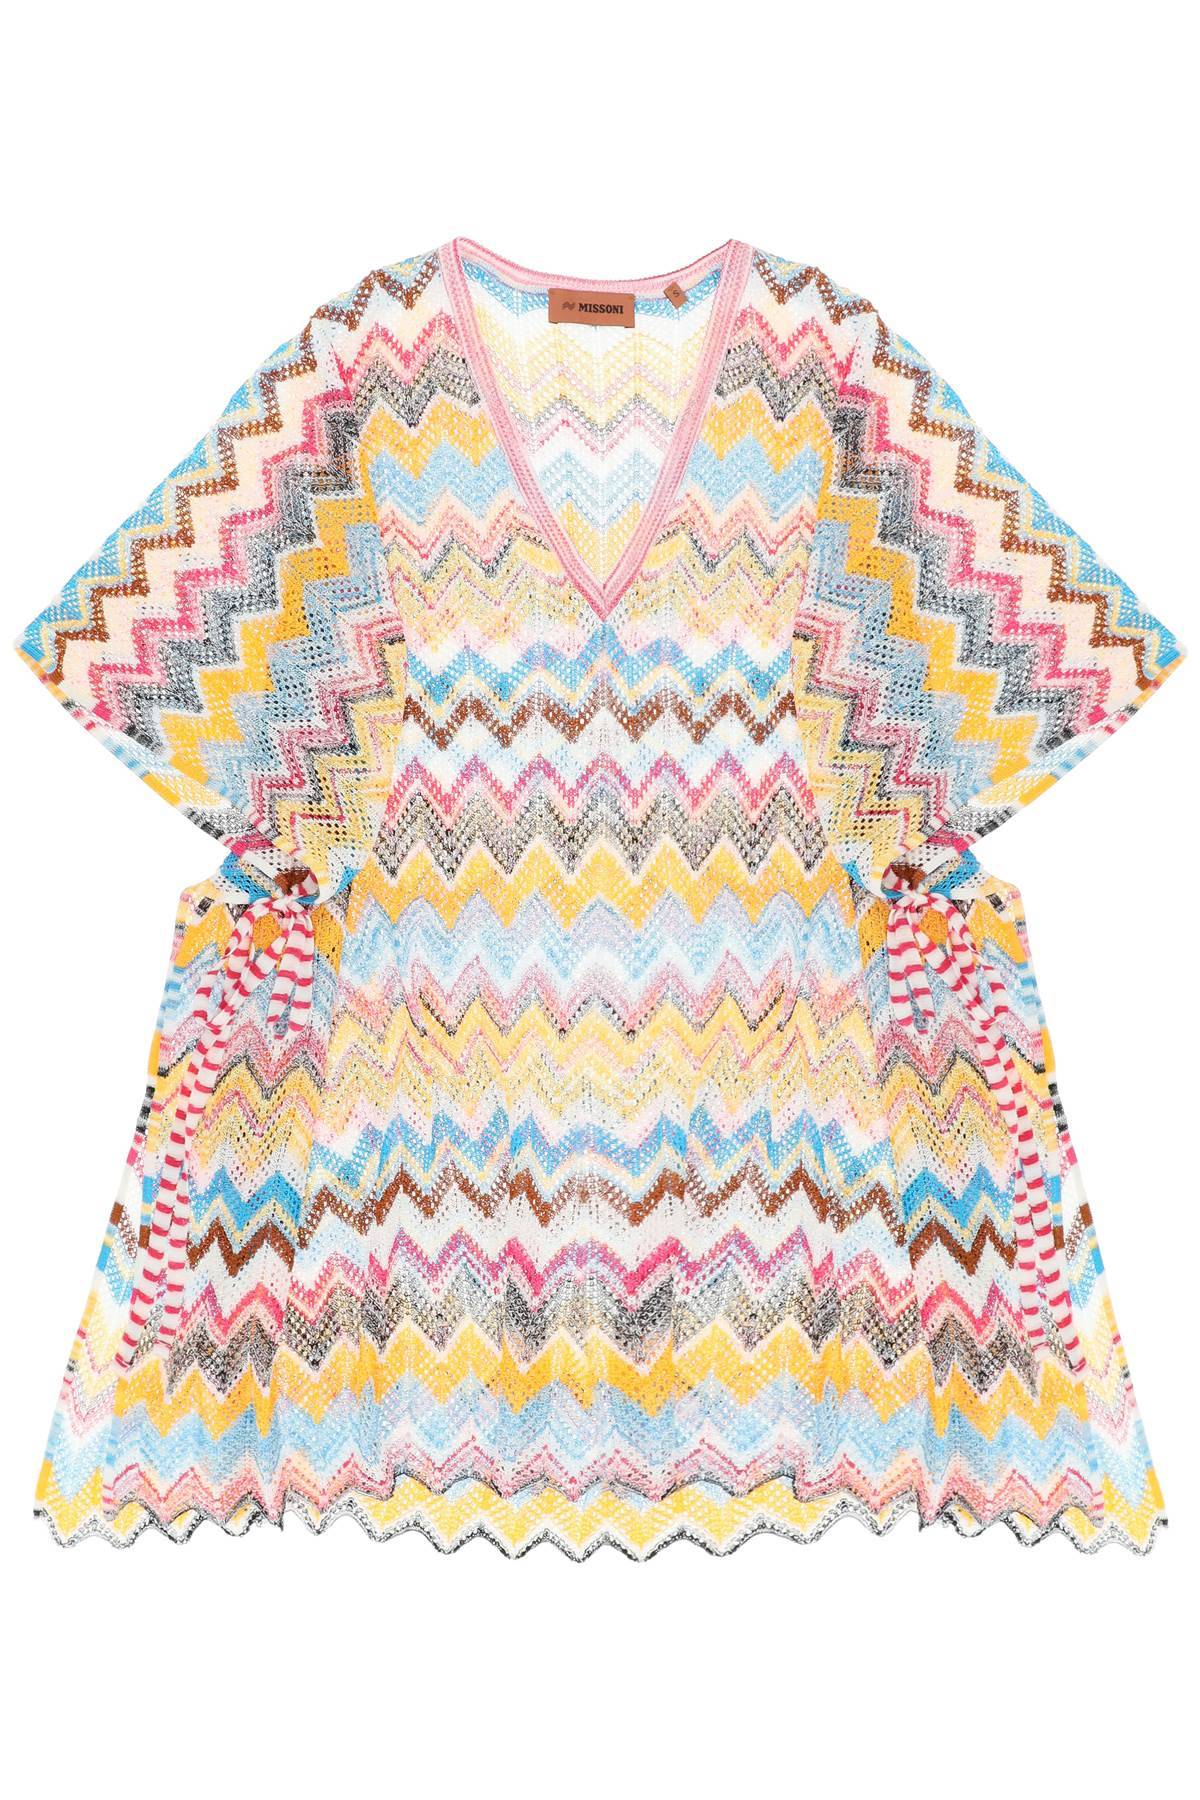 Missoni MISSONI multicolor knit poncho cover-up